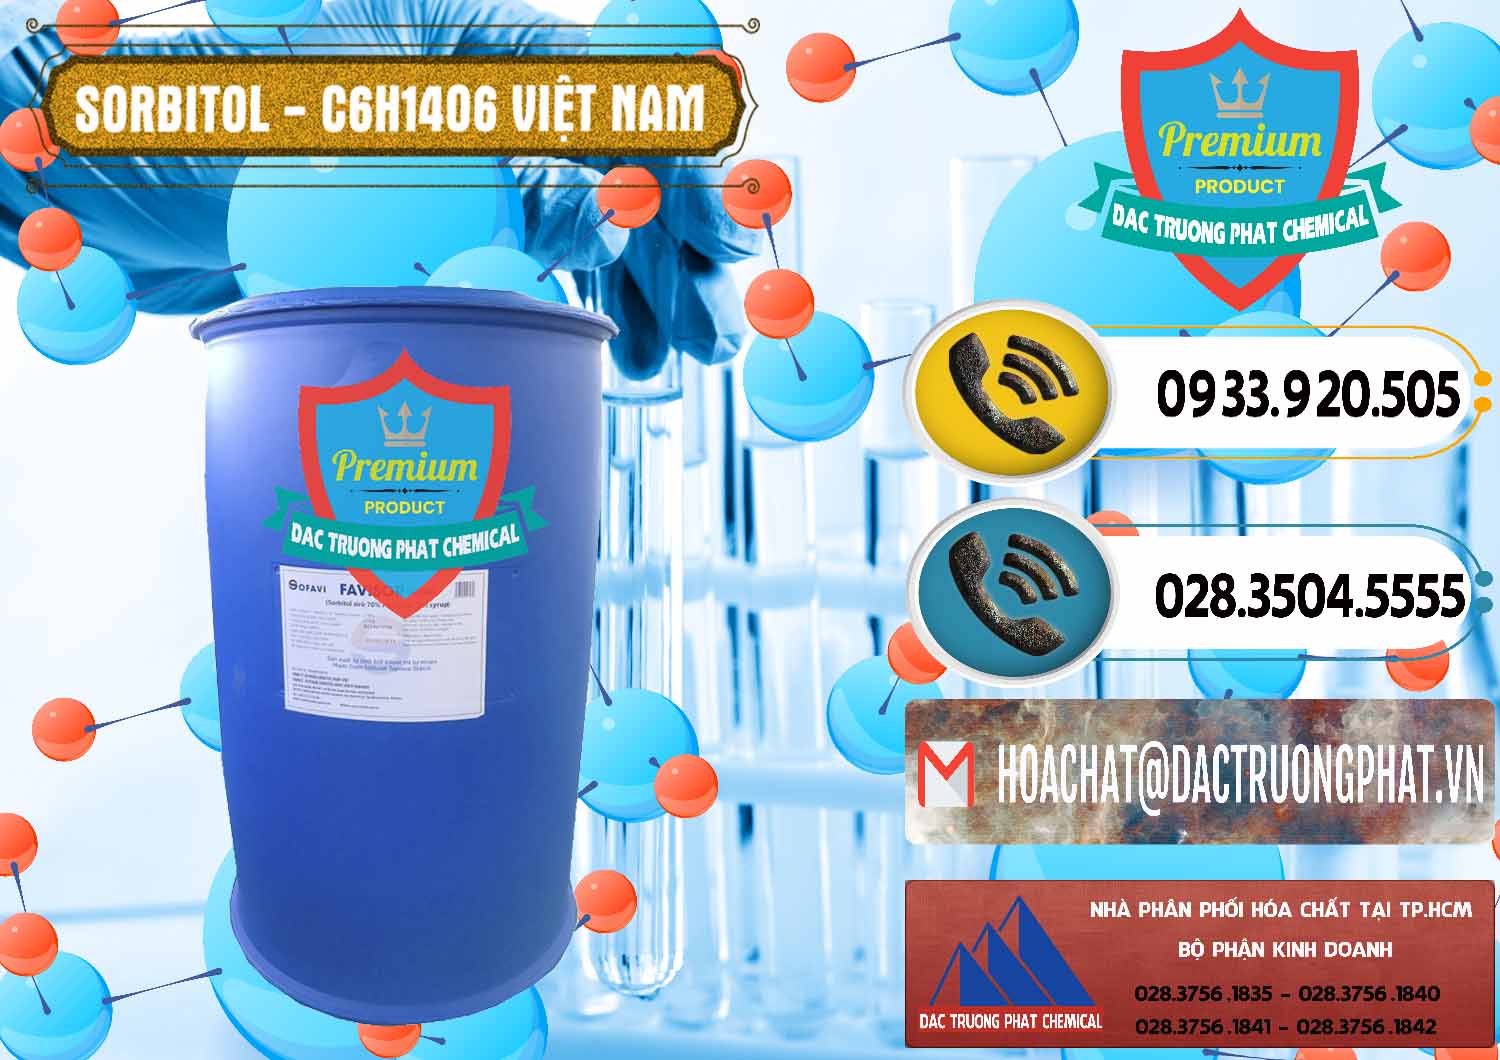 Nơi cung cấp ( phân phối ) Sorbitol - C6H14O6 Lỏng 70% Food Grade Việt Nam - 0438 - Cty chuyên phân phối và bán hóa chất tại TP.HCM - hoachatdetnhuom.vn